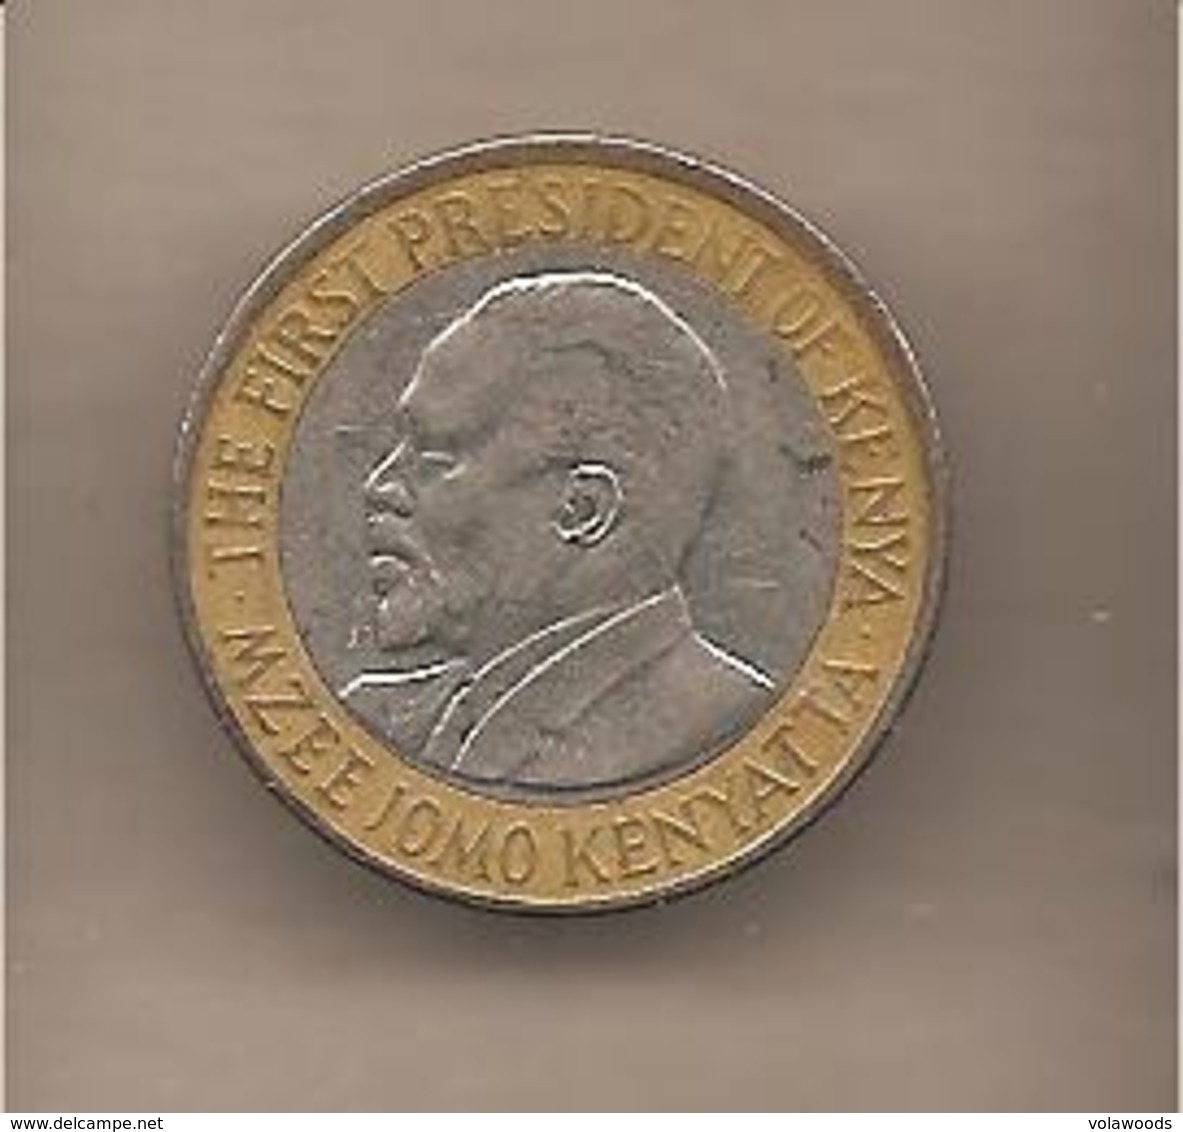 Kenya - Moneta Circolata Da 10 Scellini - 2010 - Kenia